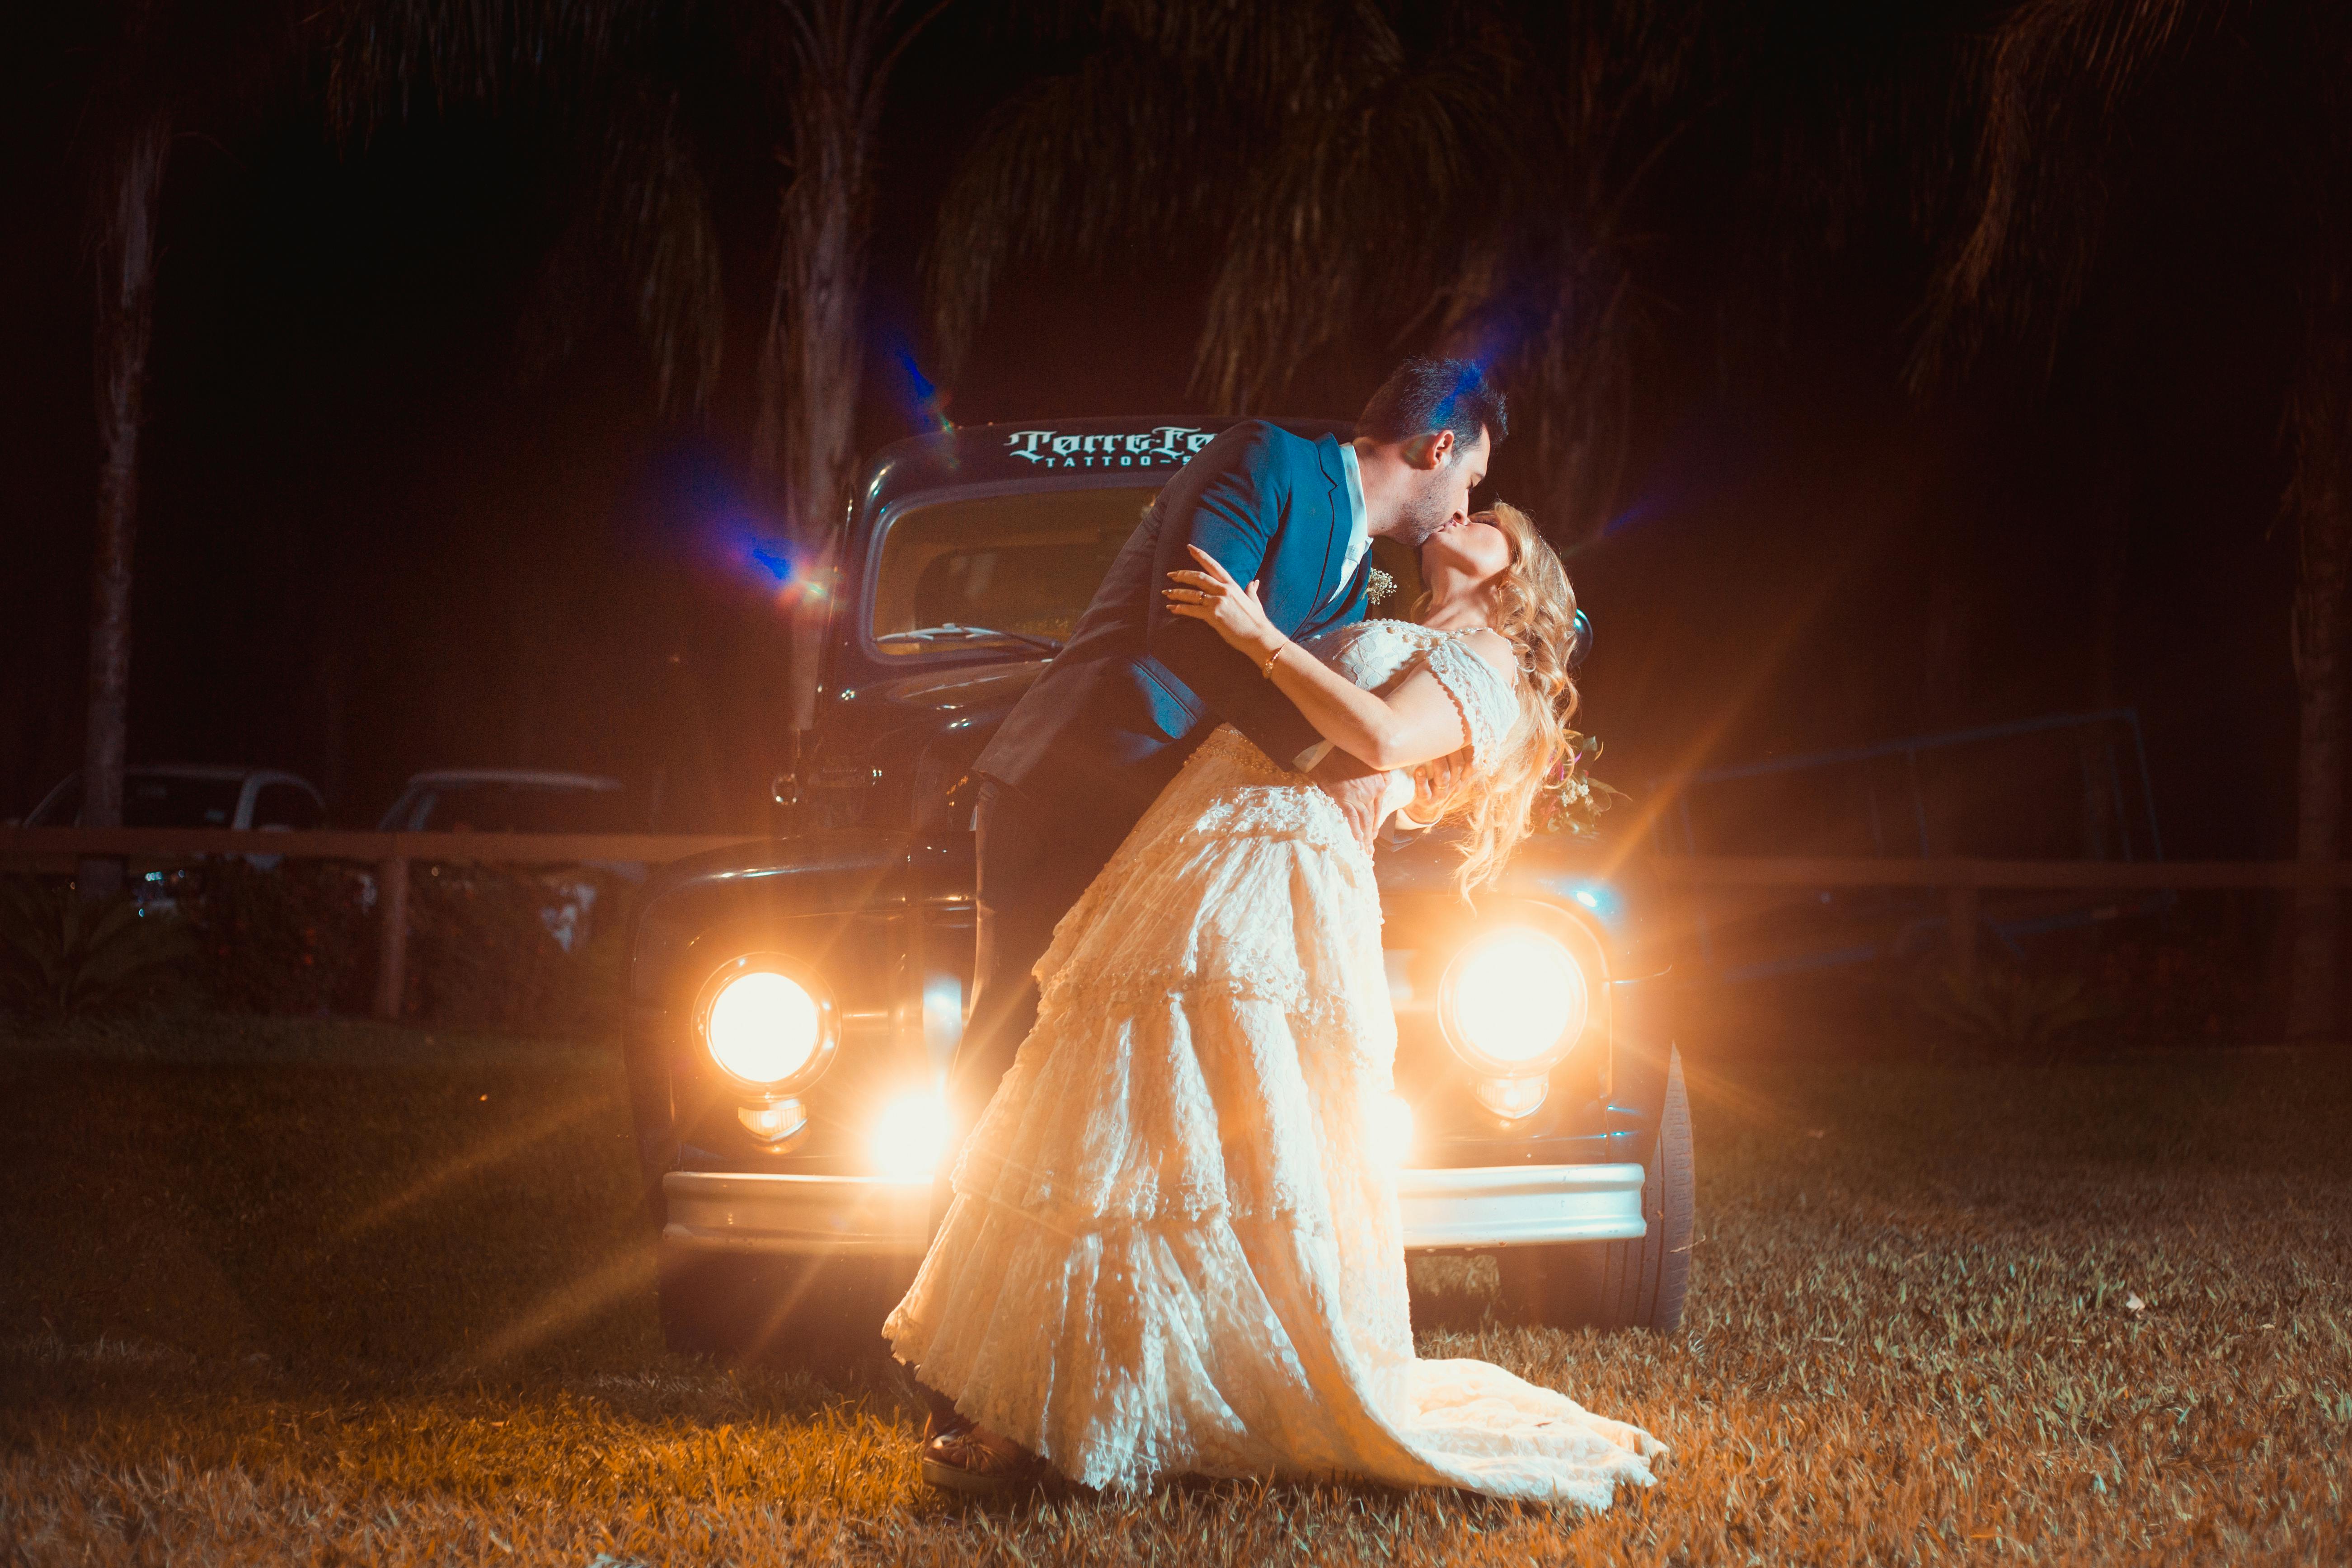 Un homme et une femme s'embrassent passionnément devant une voiture | Source : Pexels